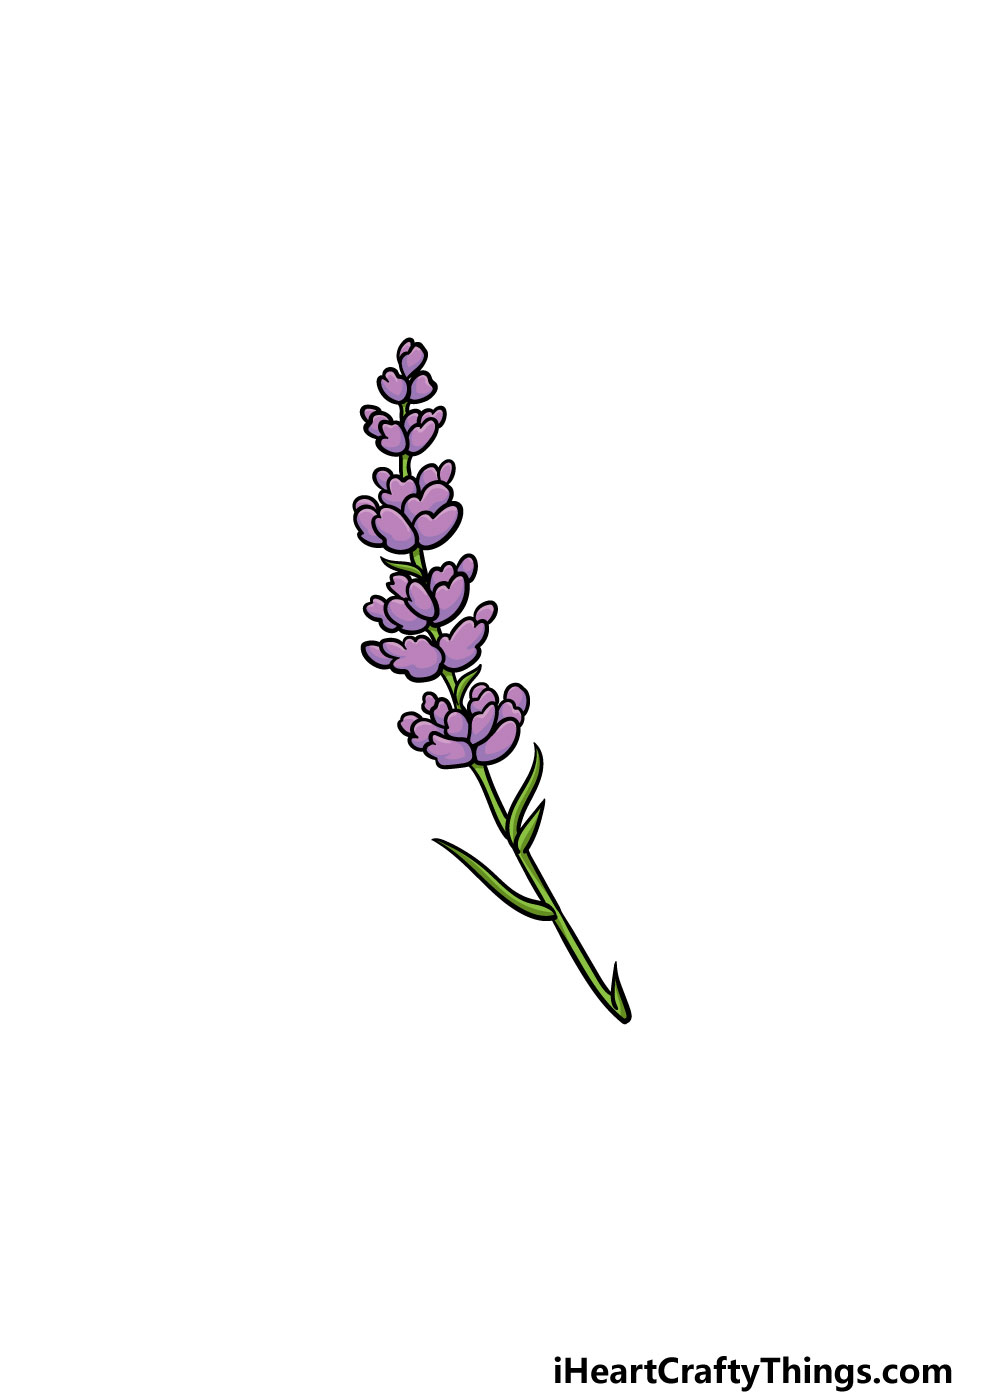 6 41 - Hướng dẫn kiểu vẽ hoa oải hương thơm rất đẹp giản dị với 6 bước cơ bản